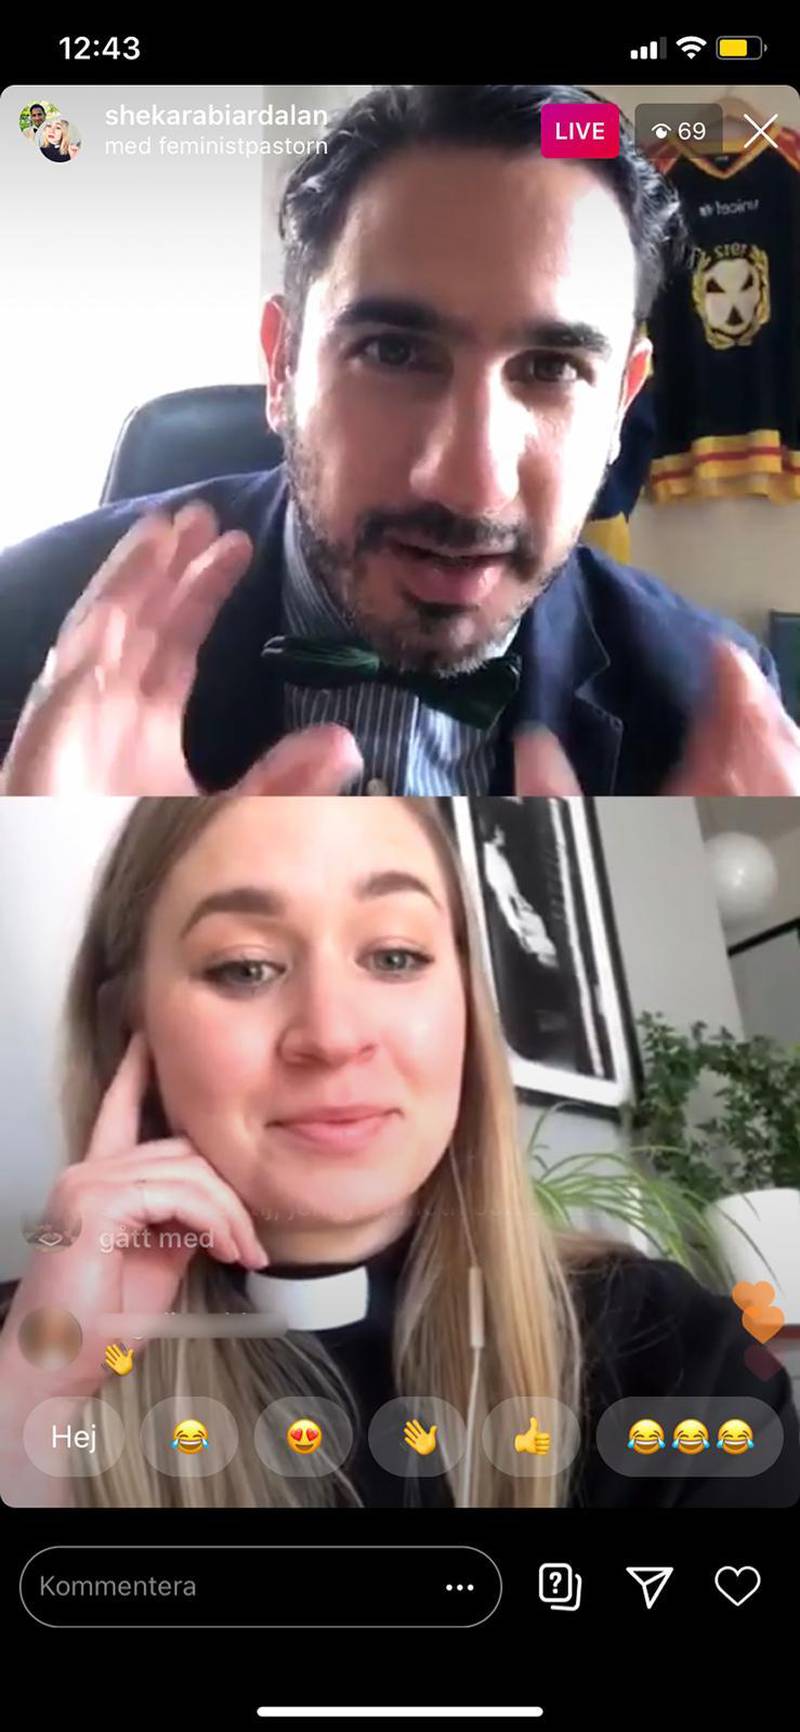 Esther Kazen möter Ardalan Shekarabi (S) på Instagram i ett samtal öppet för alla som ville.